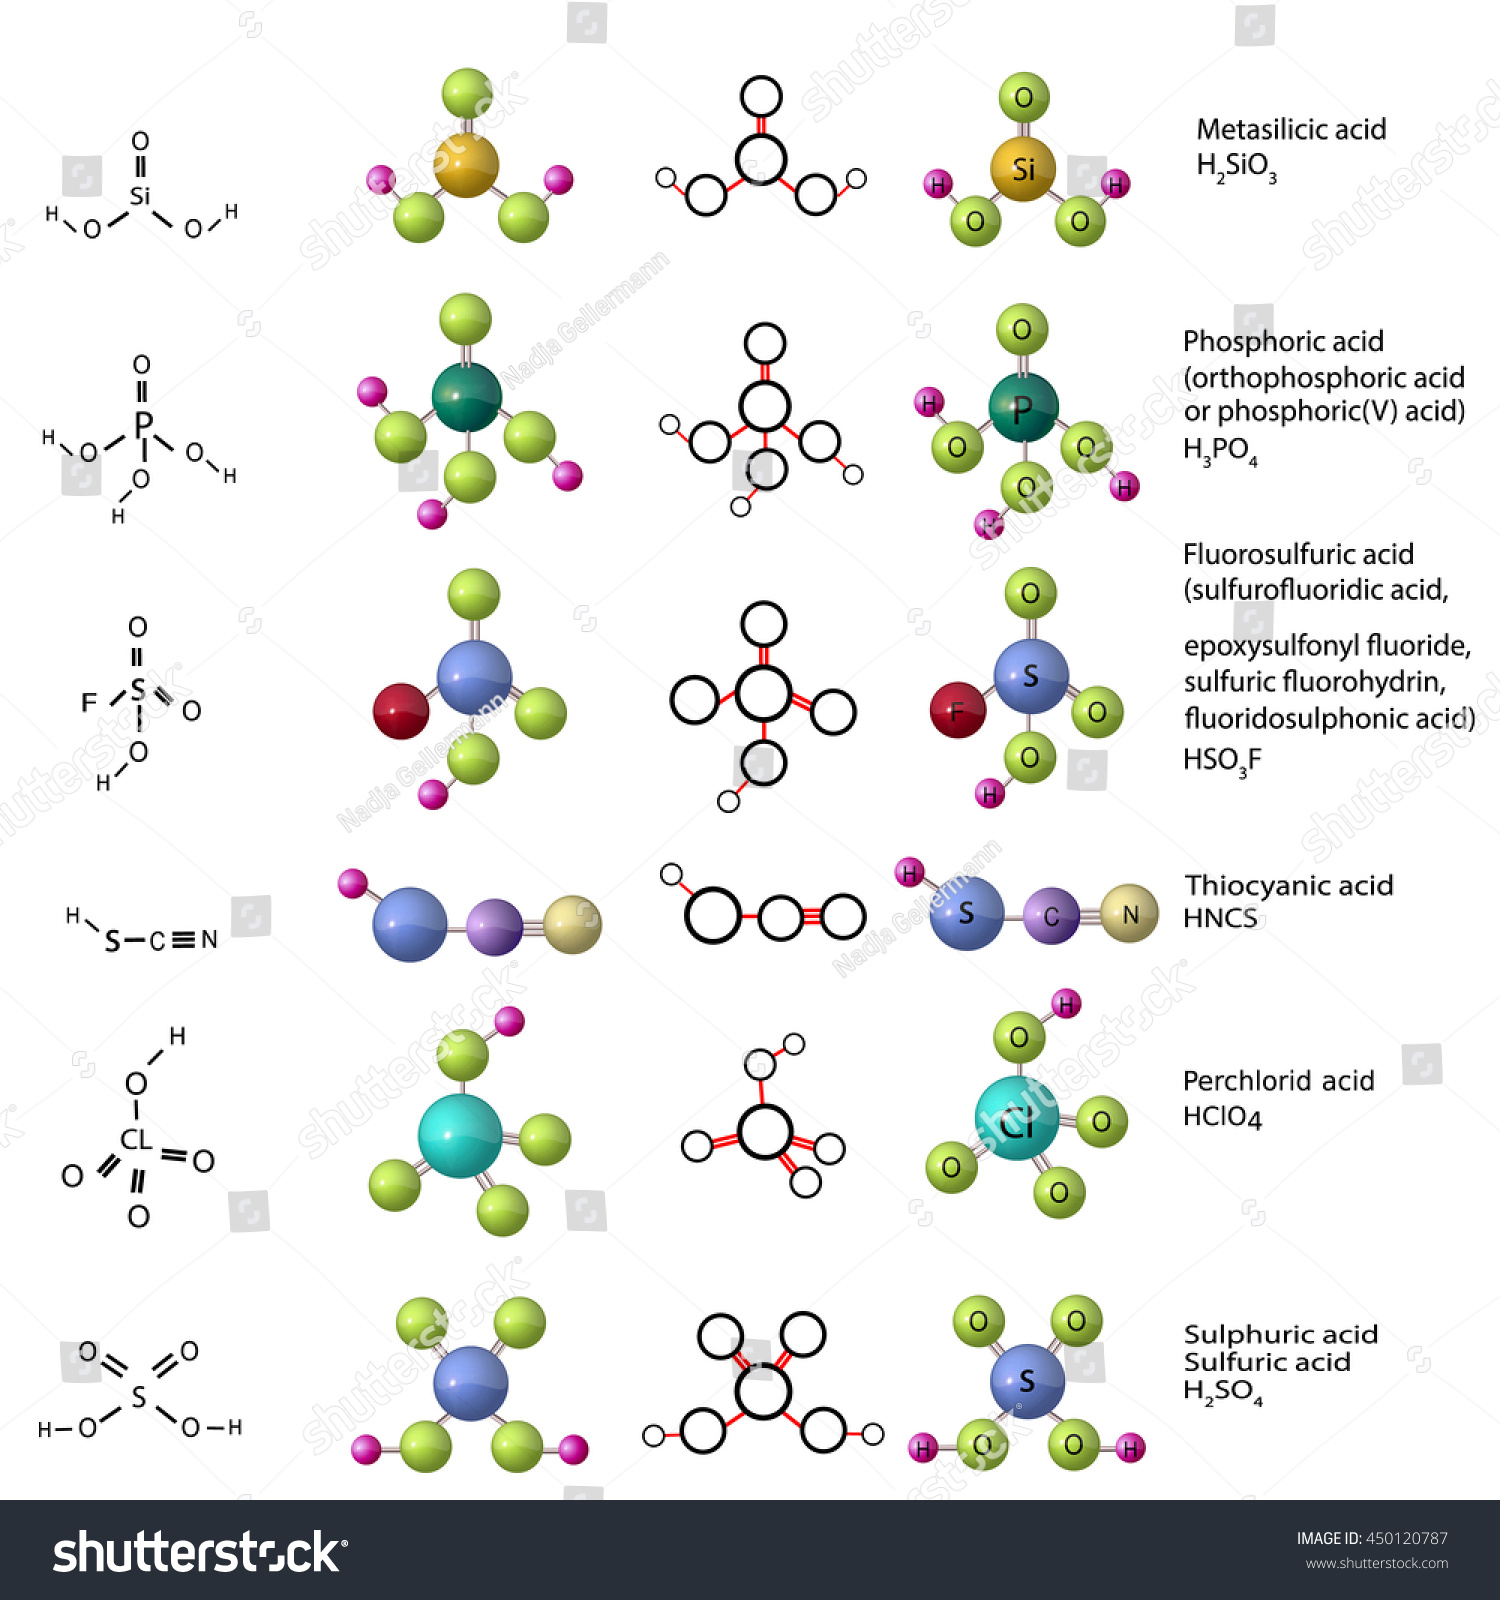 SVG of Set of molecules: metasilicic acid, phosphoric (orthophosphoric) acid, fluorosulfuric (sulfurofluoridic) acid, thiocyanic acid, perchloric acid svg